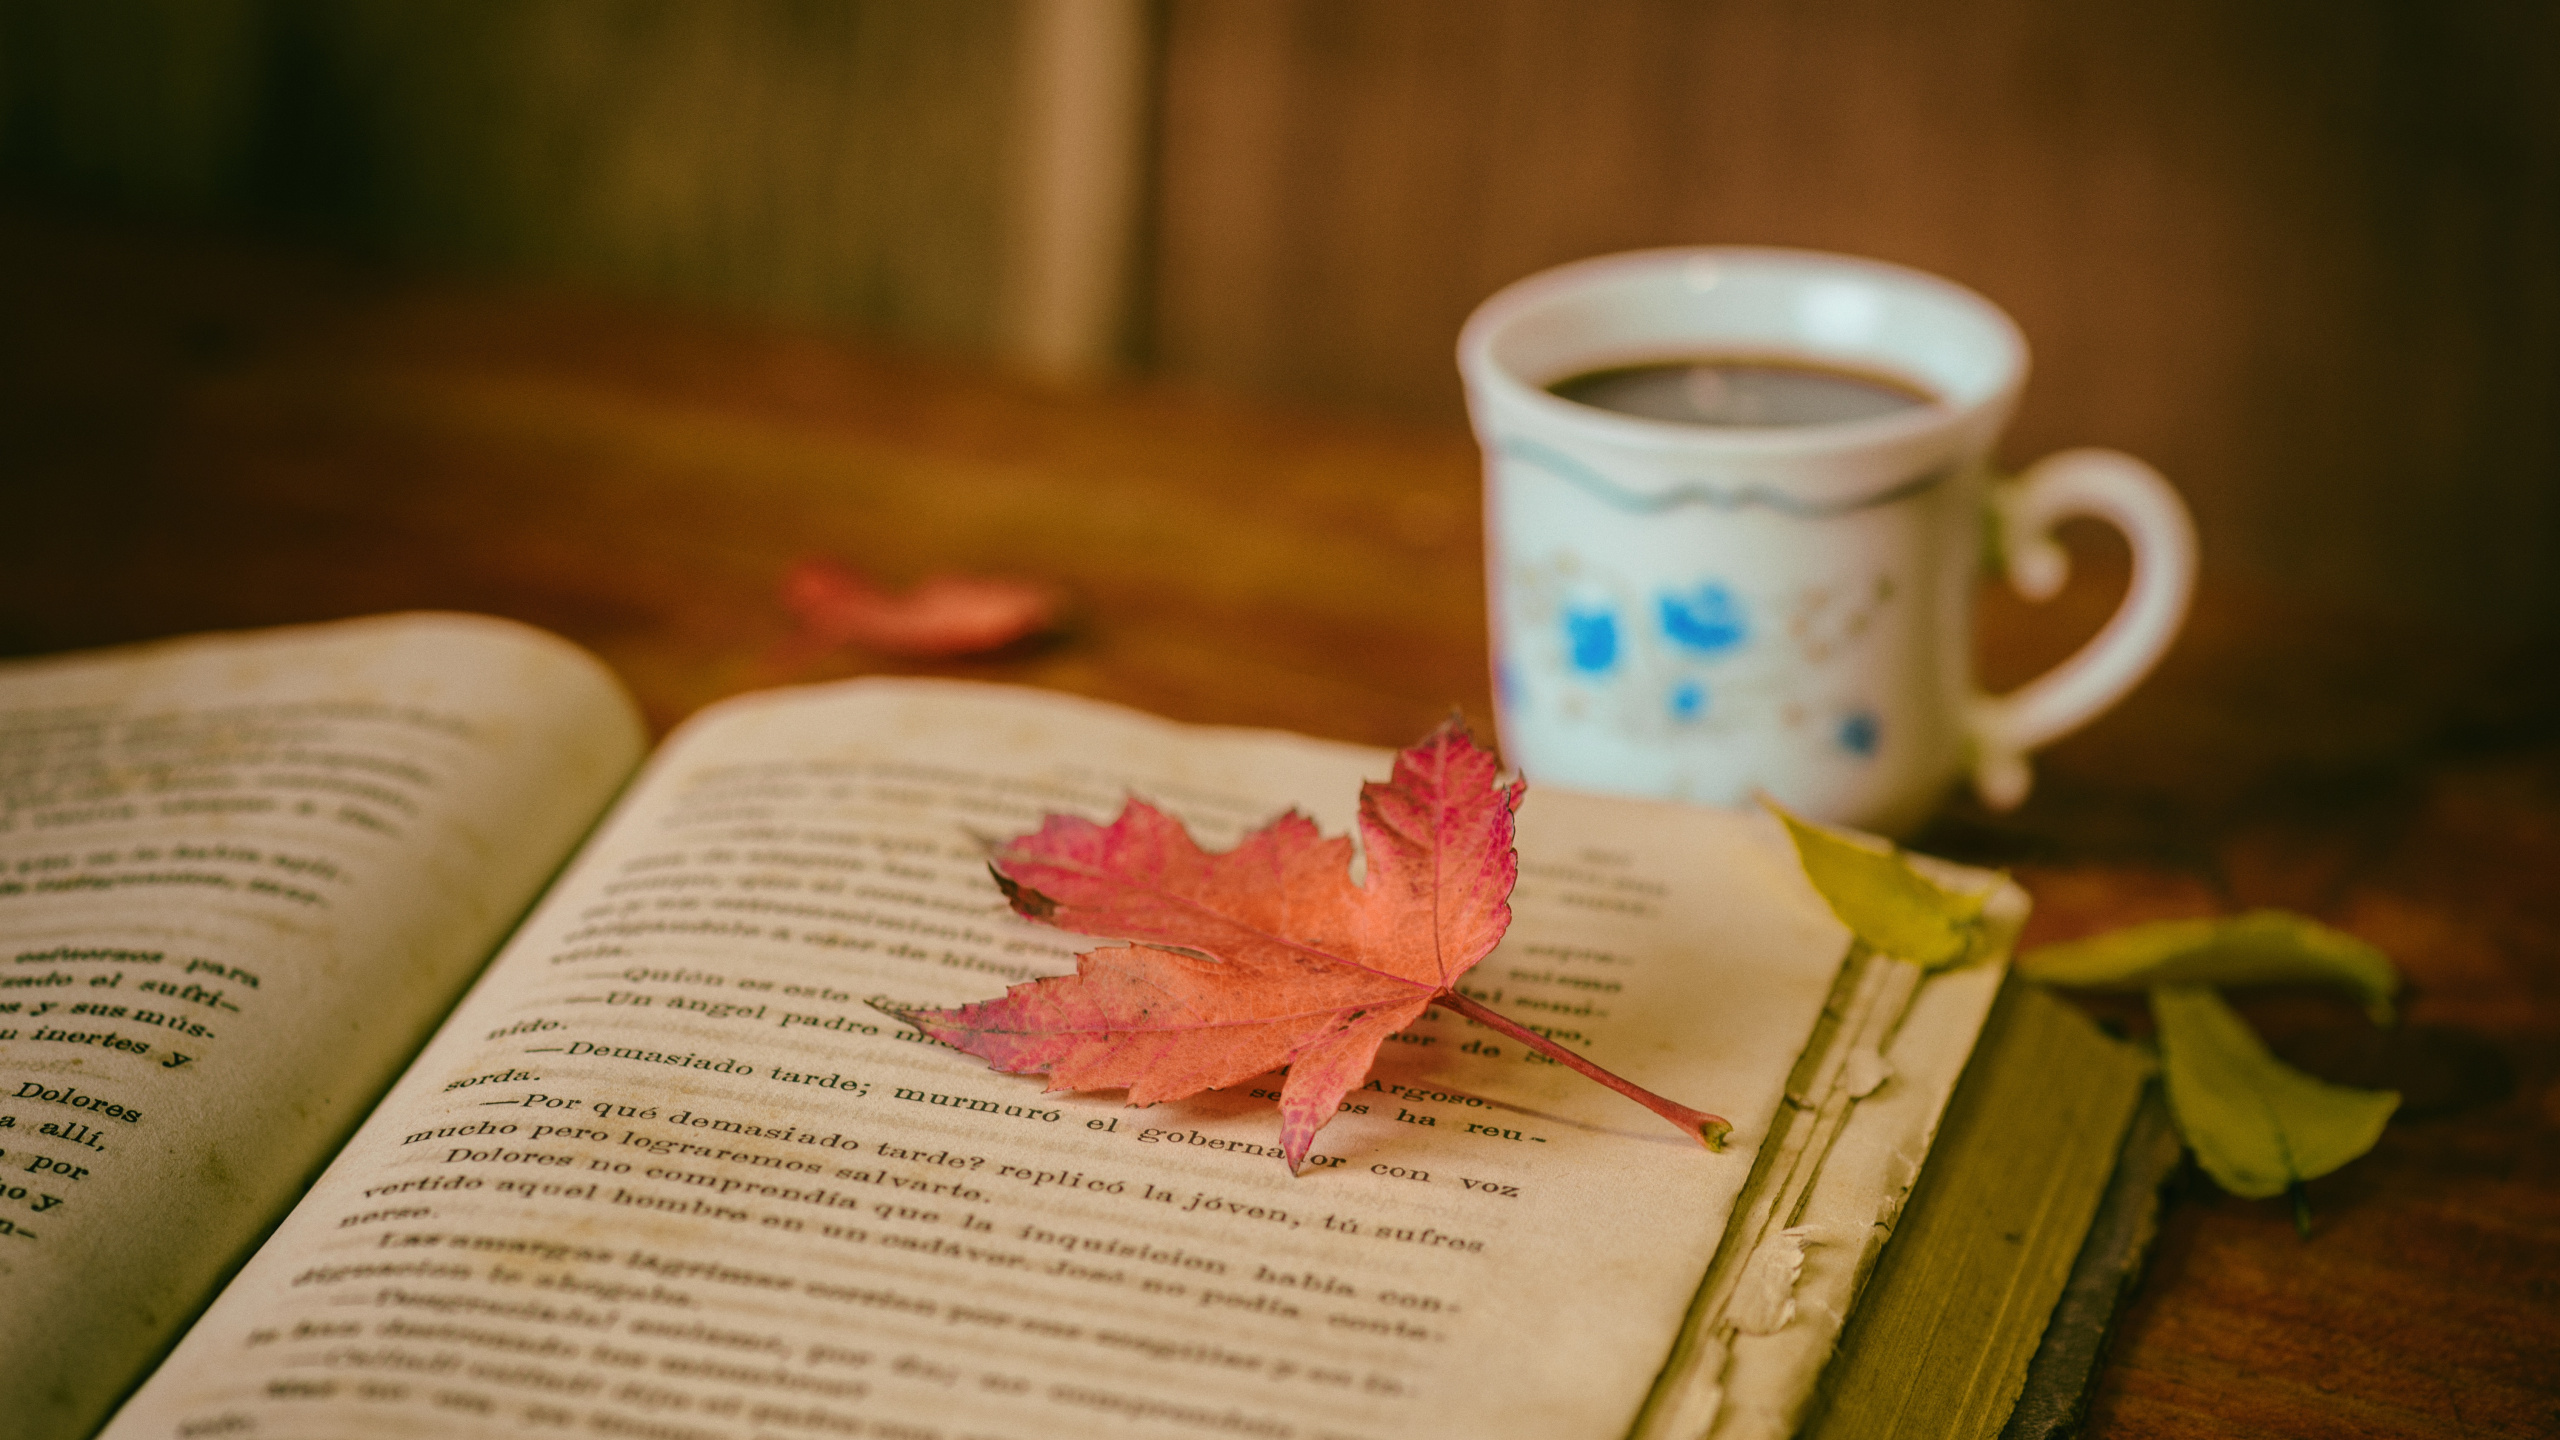 本书, 书评, 阅读, 咖啡杯, 粉红色 壁纸 2560x1440 允许